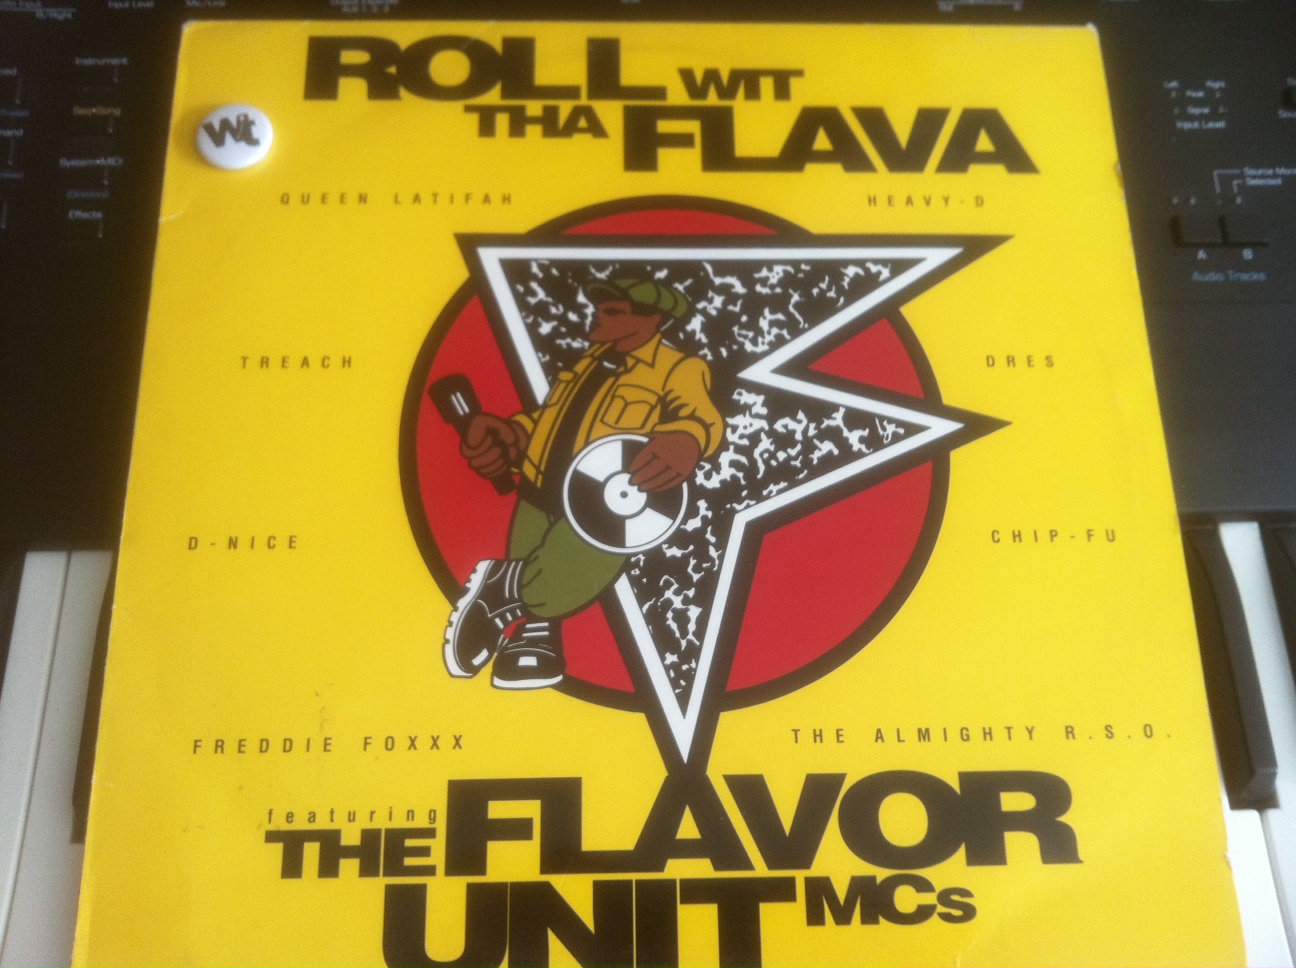 ទាញយក Flavor Unit MC's - Roll With Tha Flava (Extended)